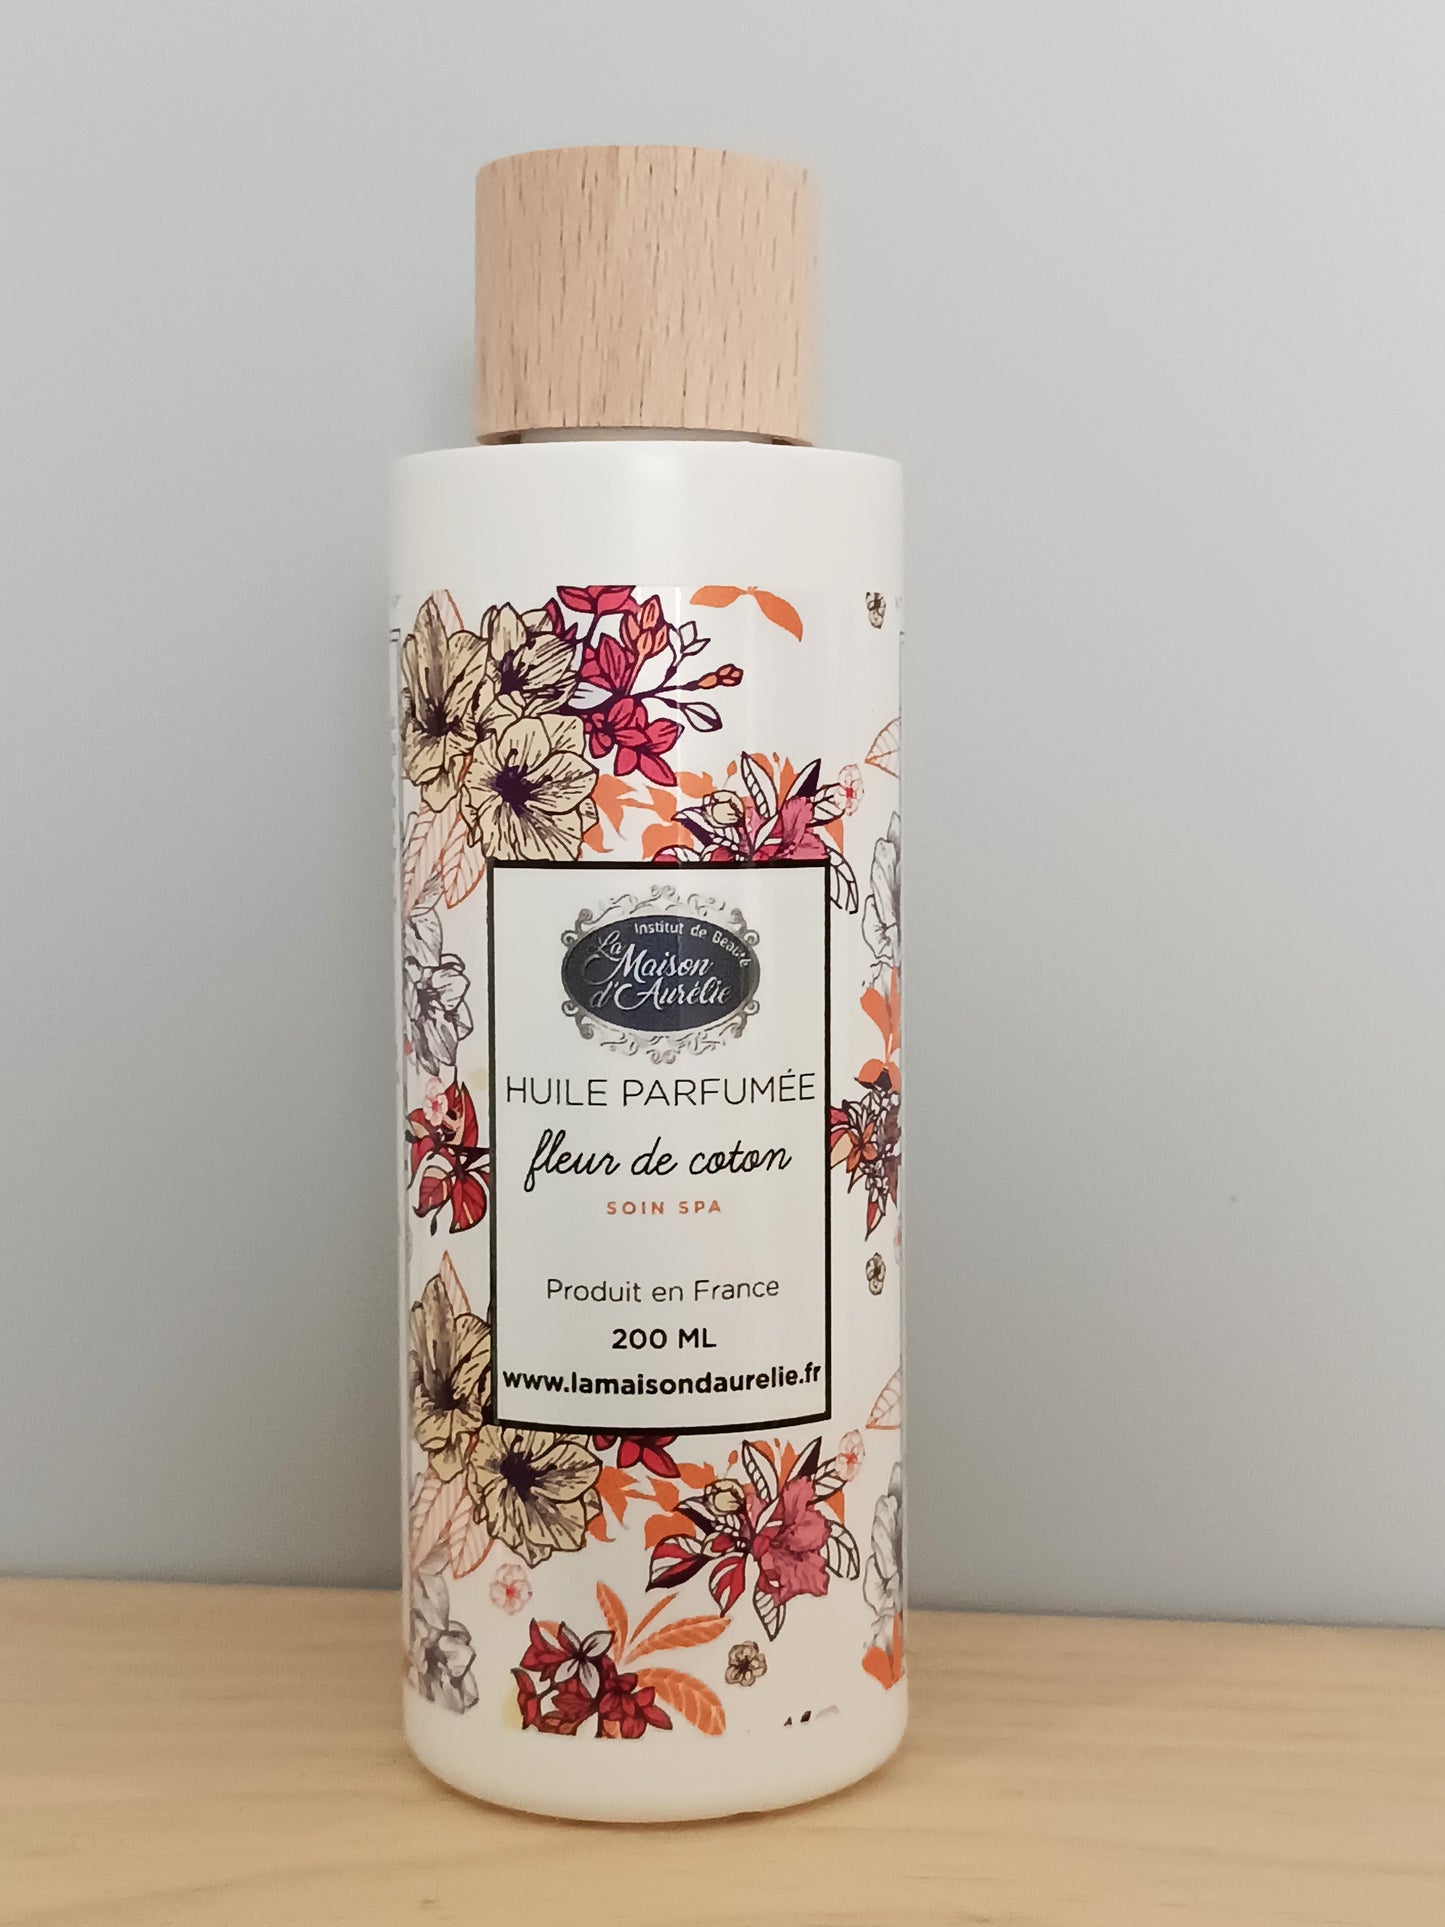 Huile parfumée fleur de coton - La Maison d'Aurélie